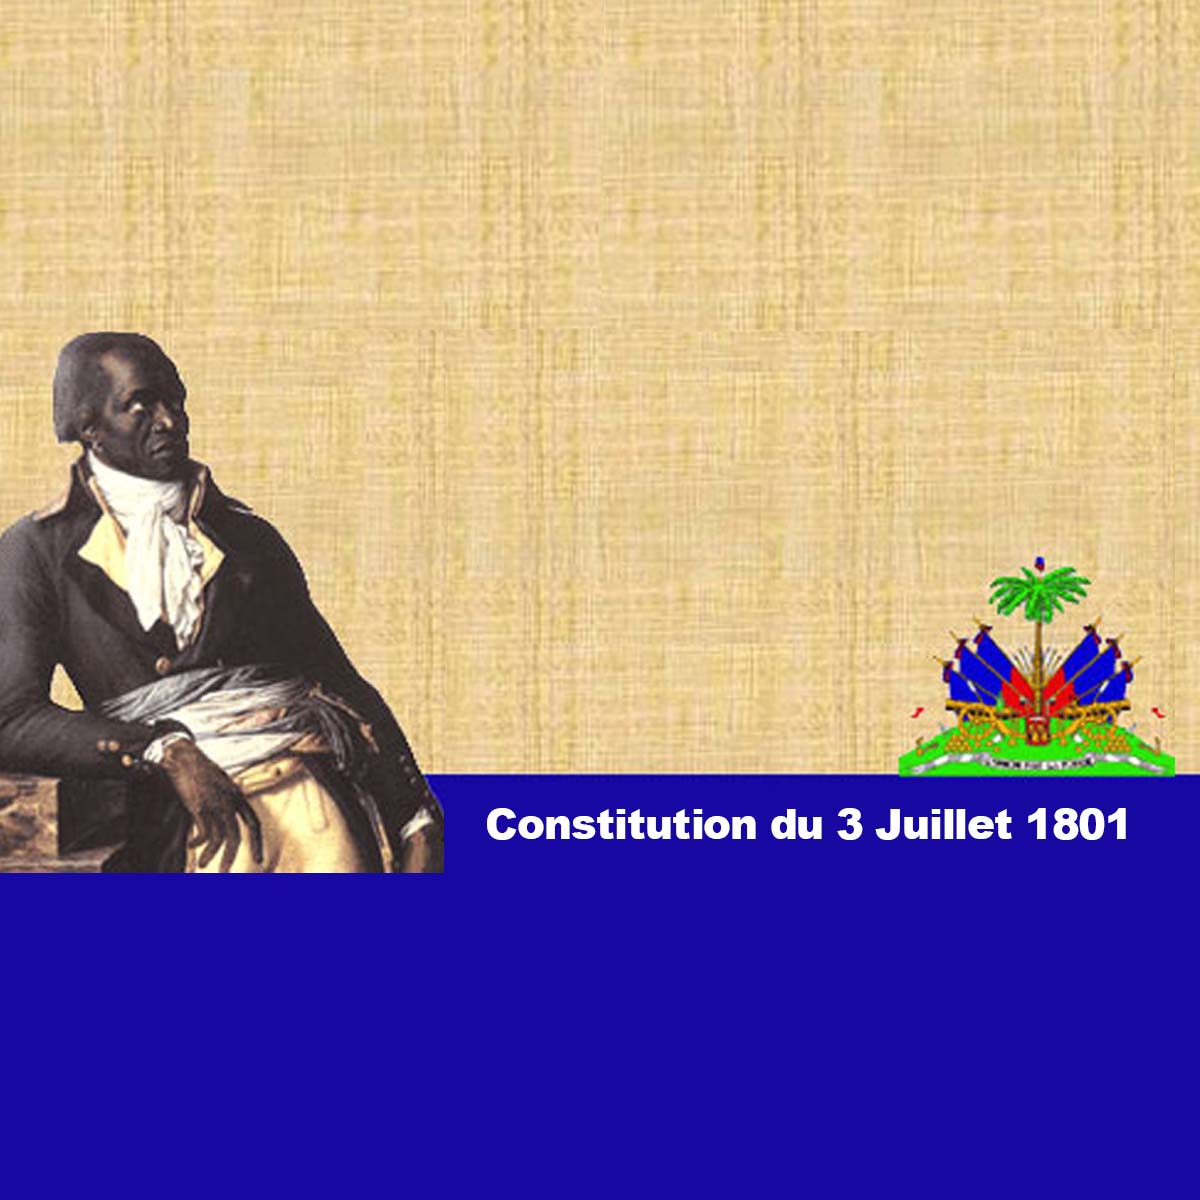 <strong>Le voyage de la constitution de 1801</strong>